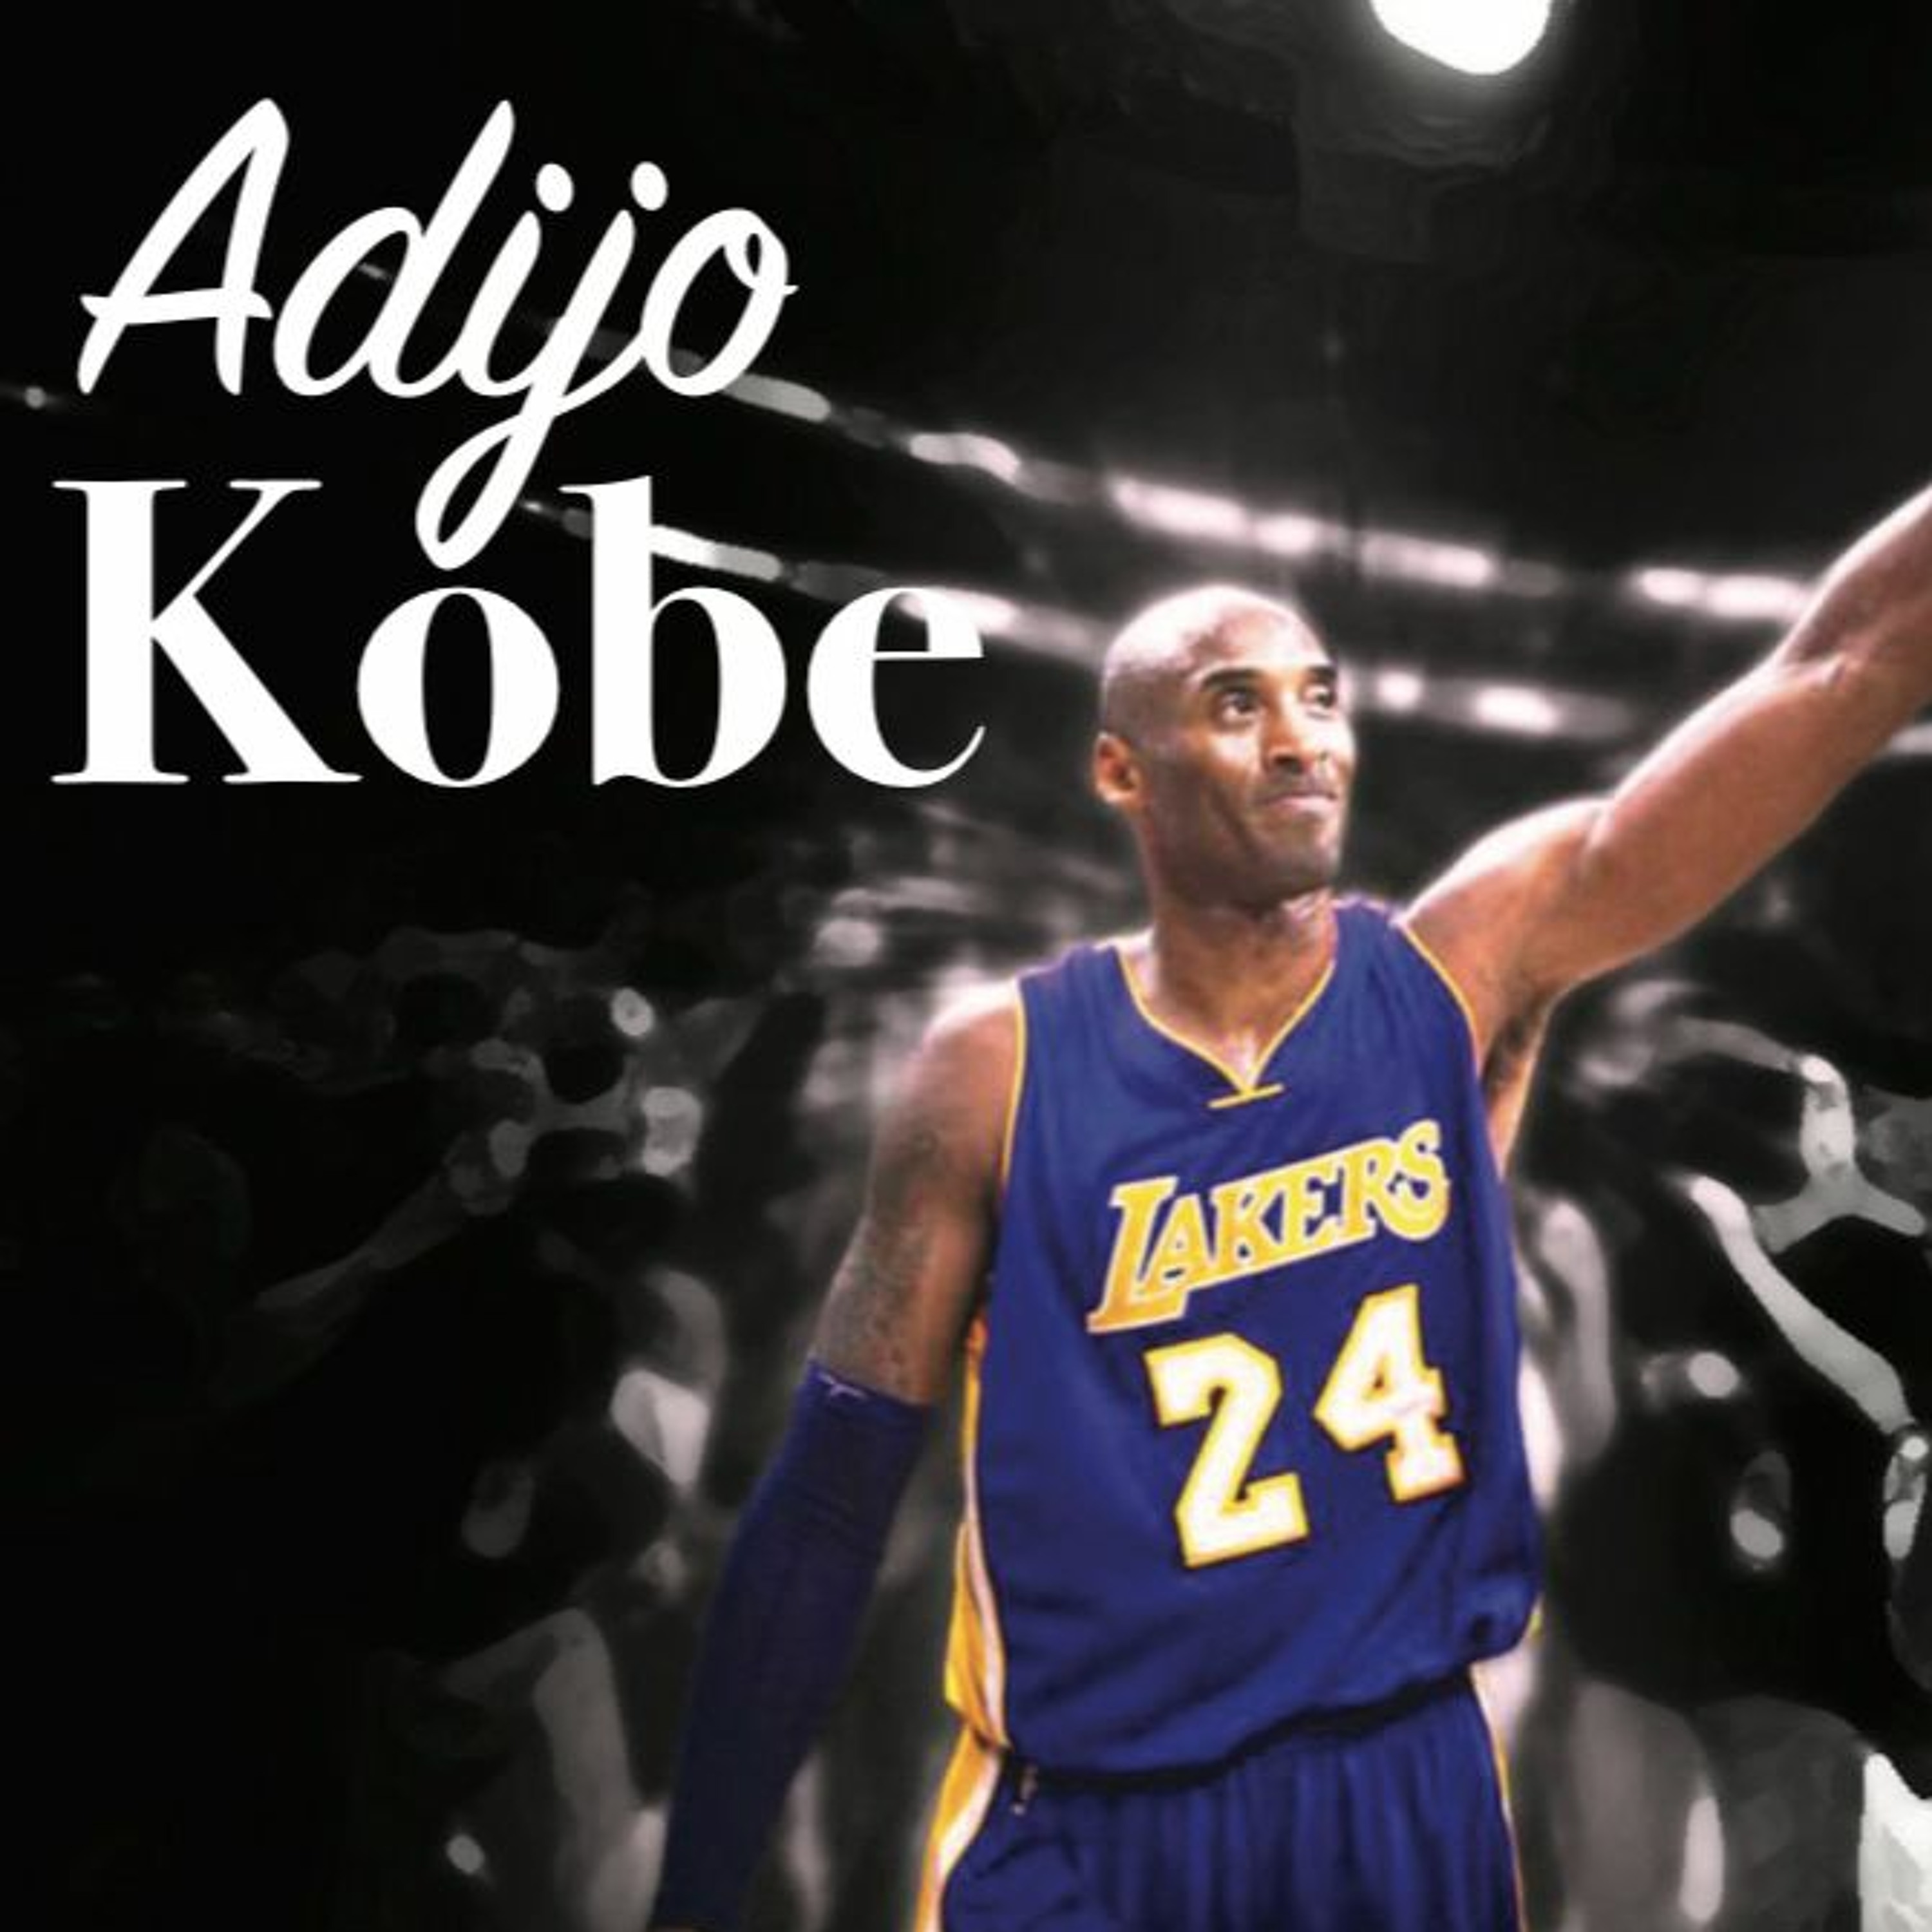 Adijo Kobe... spominjamo se enega od največjih